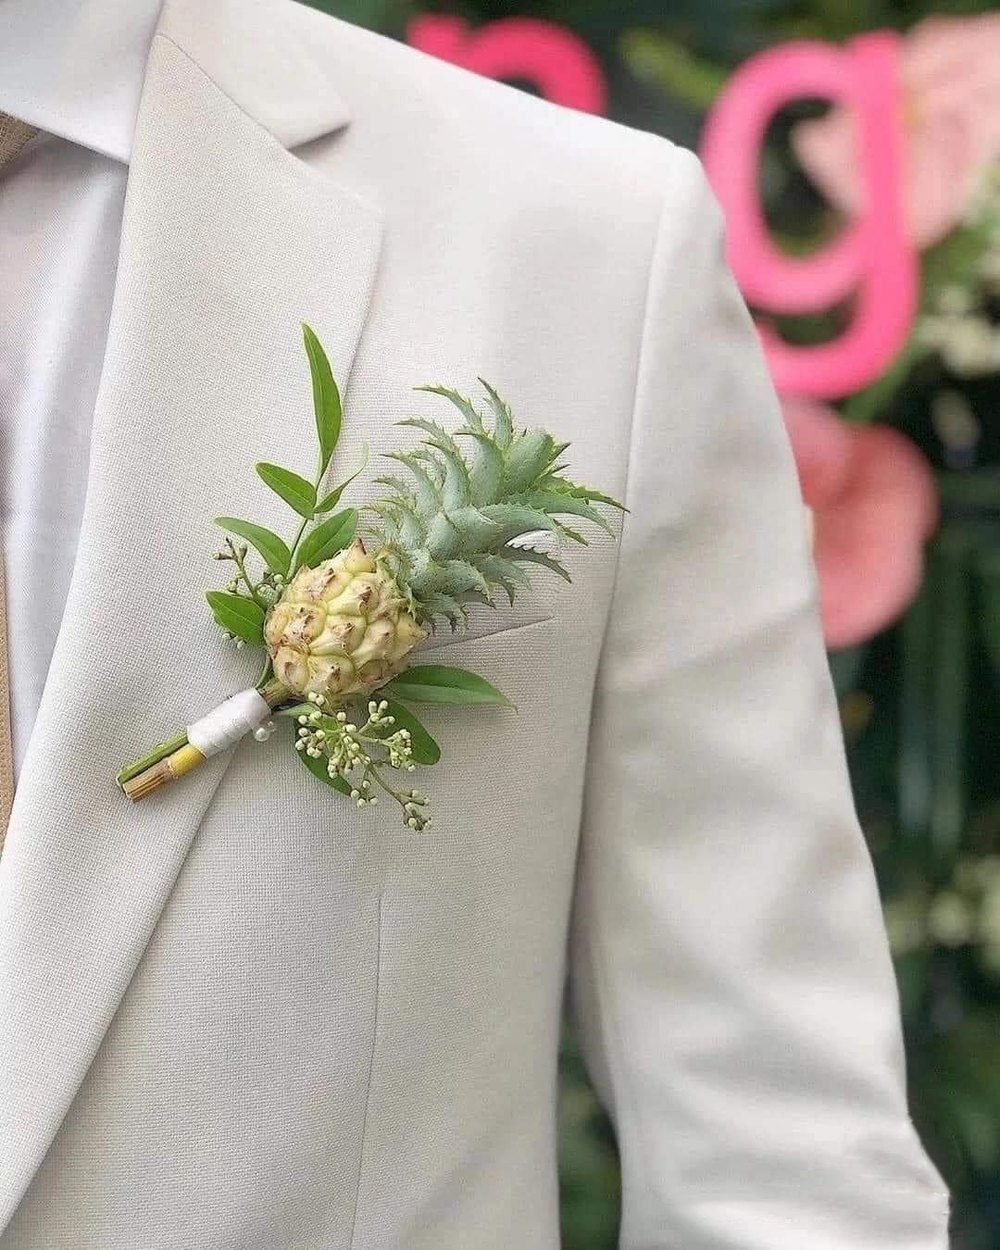 Đám cưới độc đáo dùng luôn quả để trang trí thay thế hoa tươi